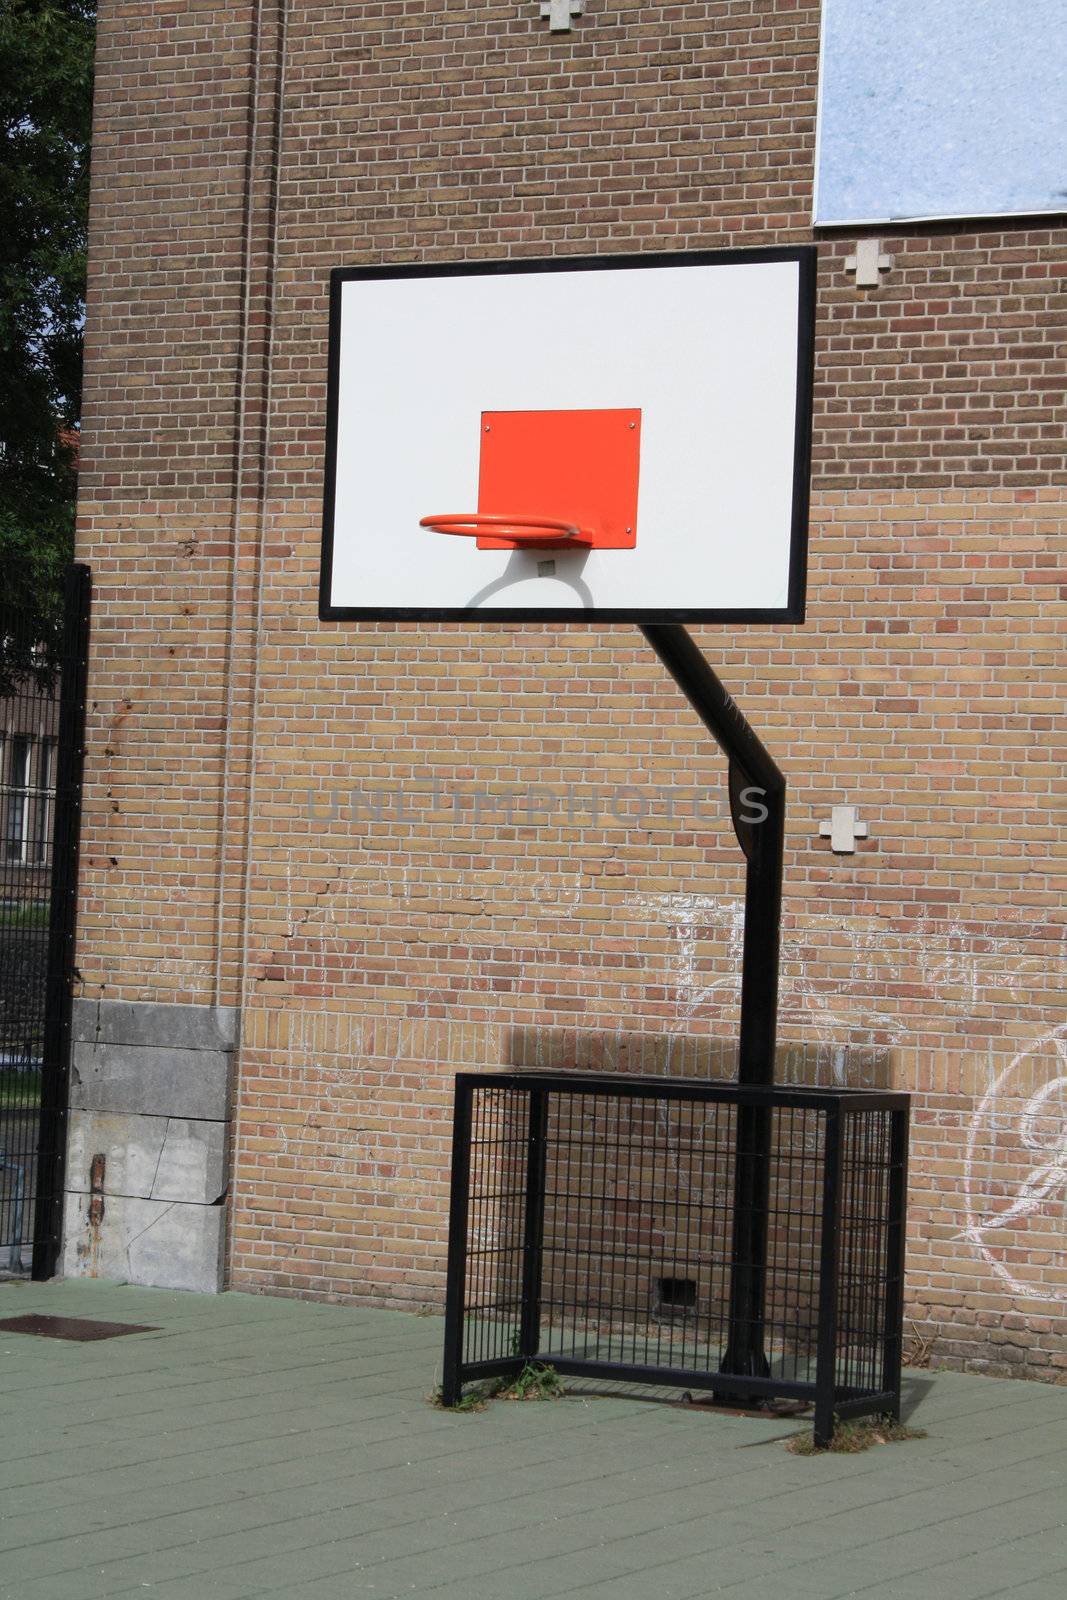 A basket ball board on a school yard playground